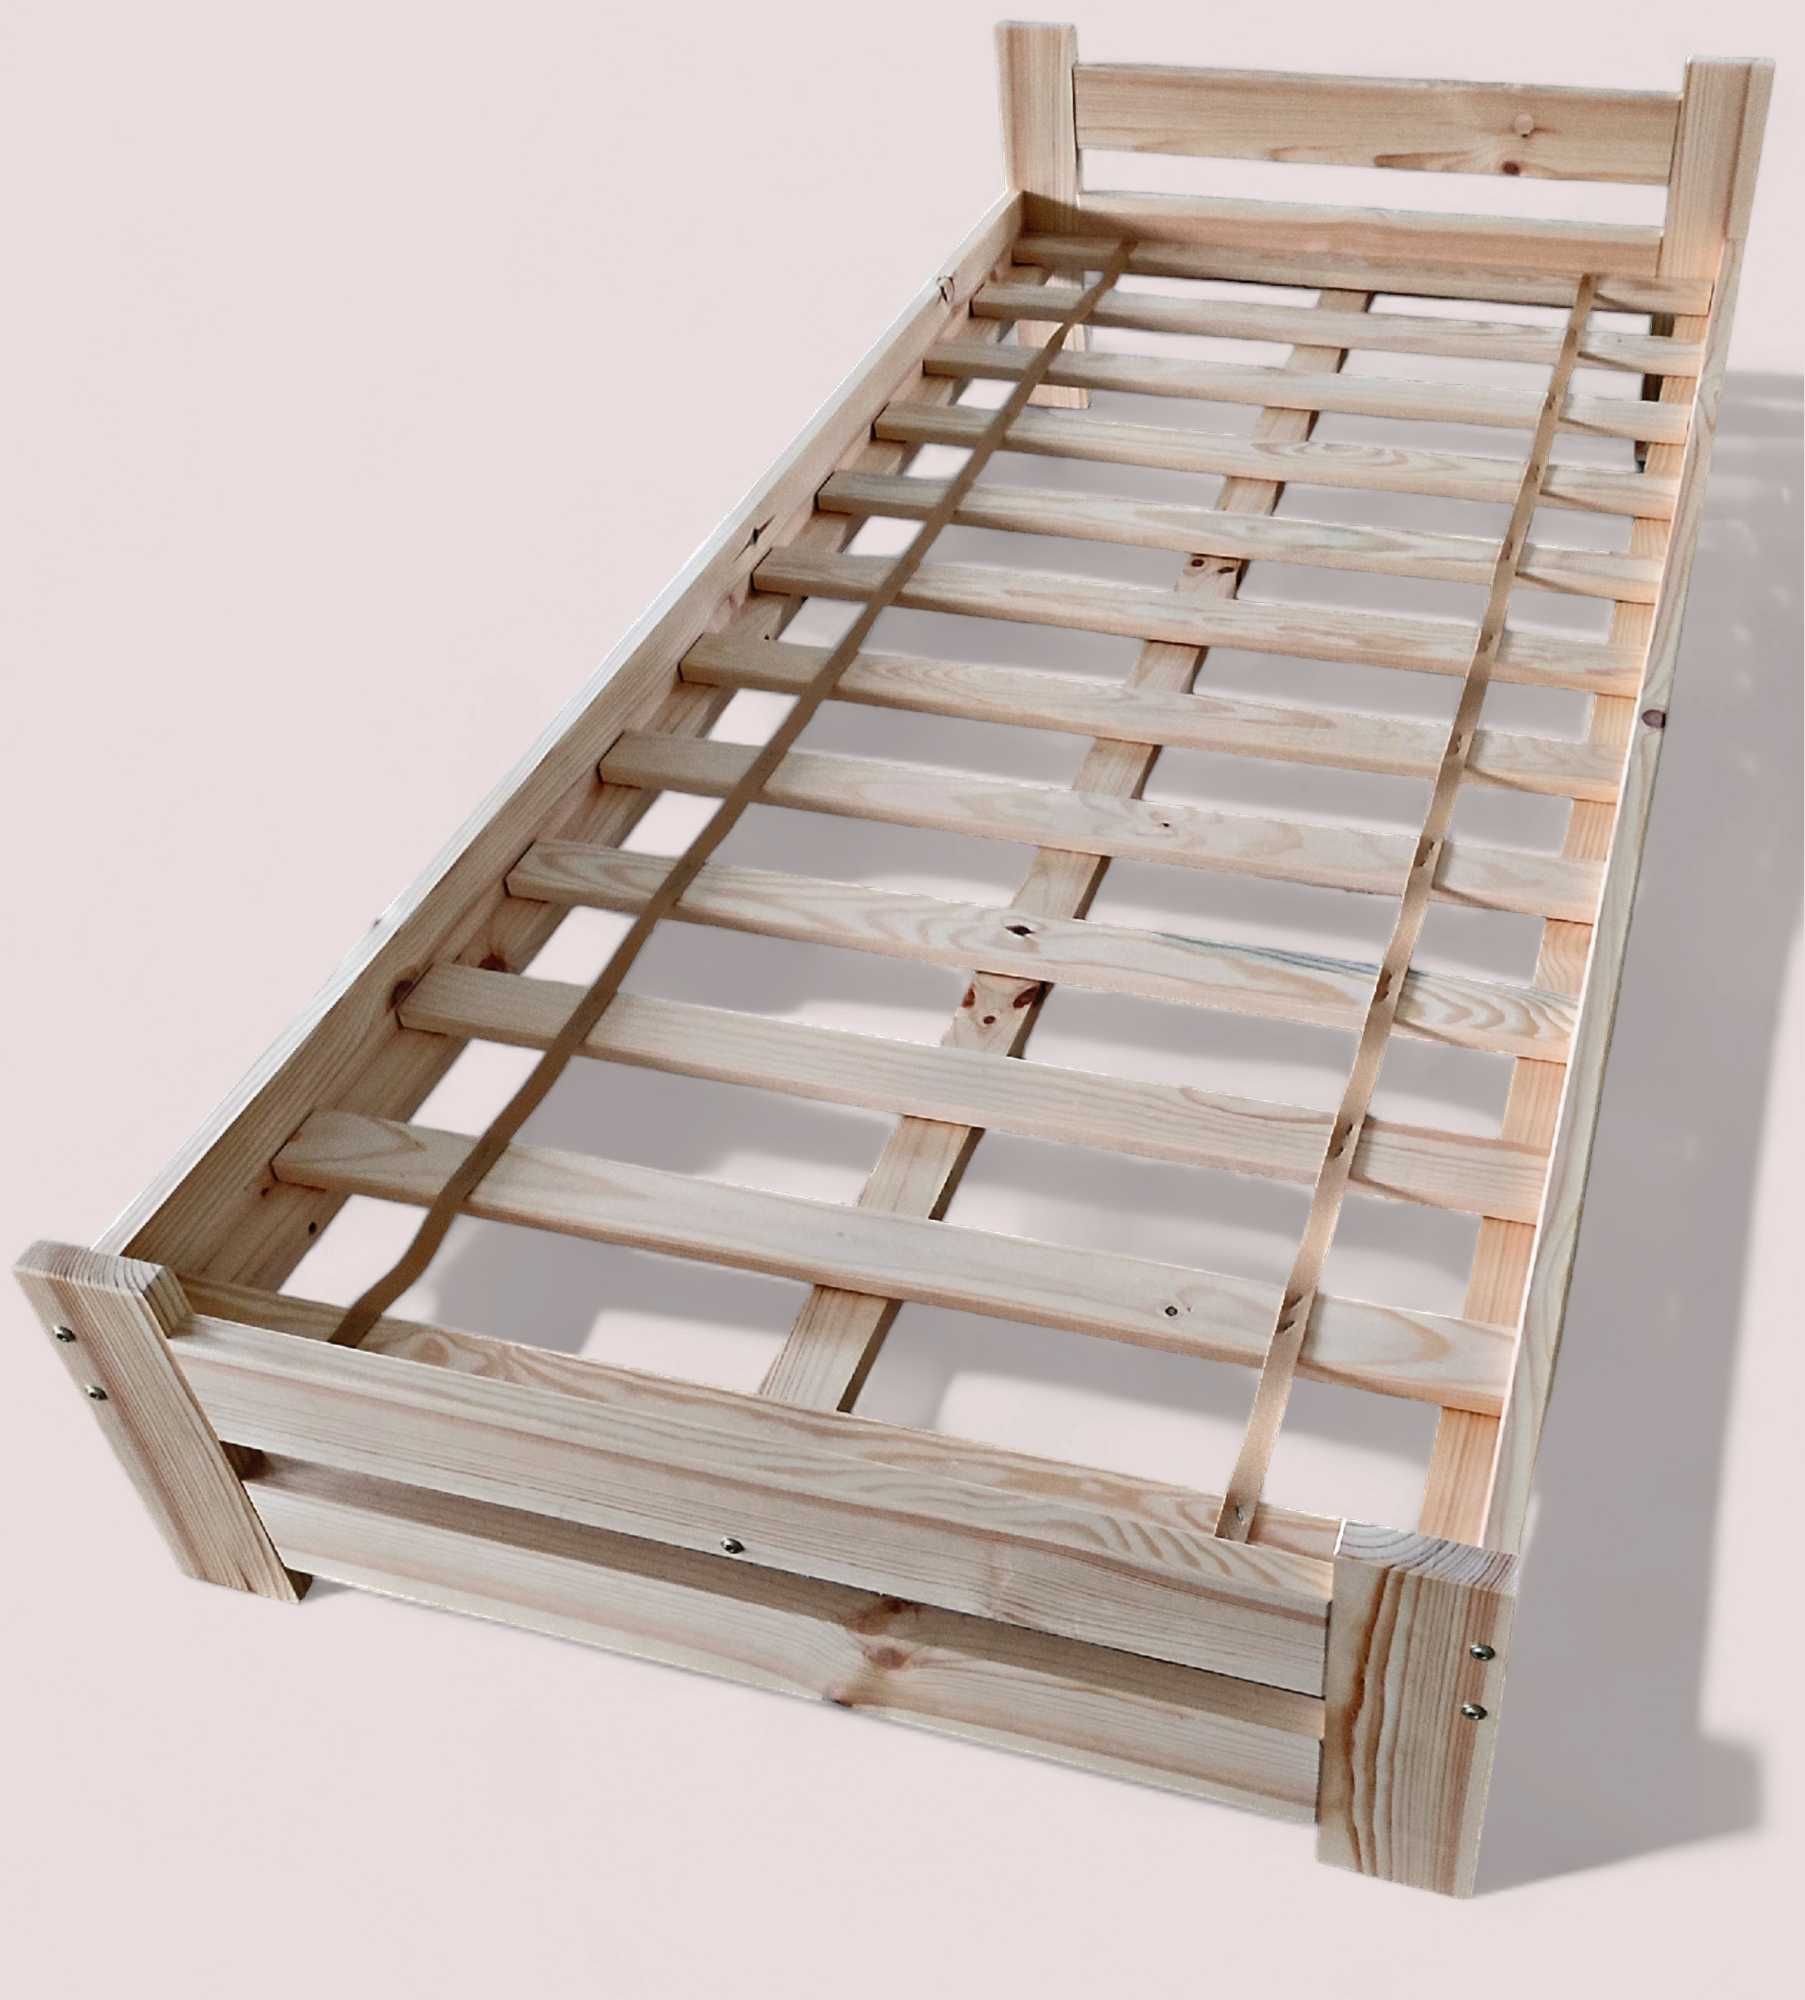 Łóżko drewniane sosnowe - Producent